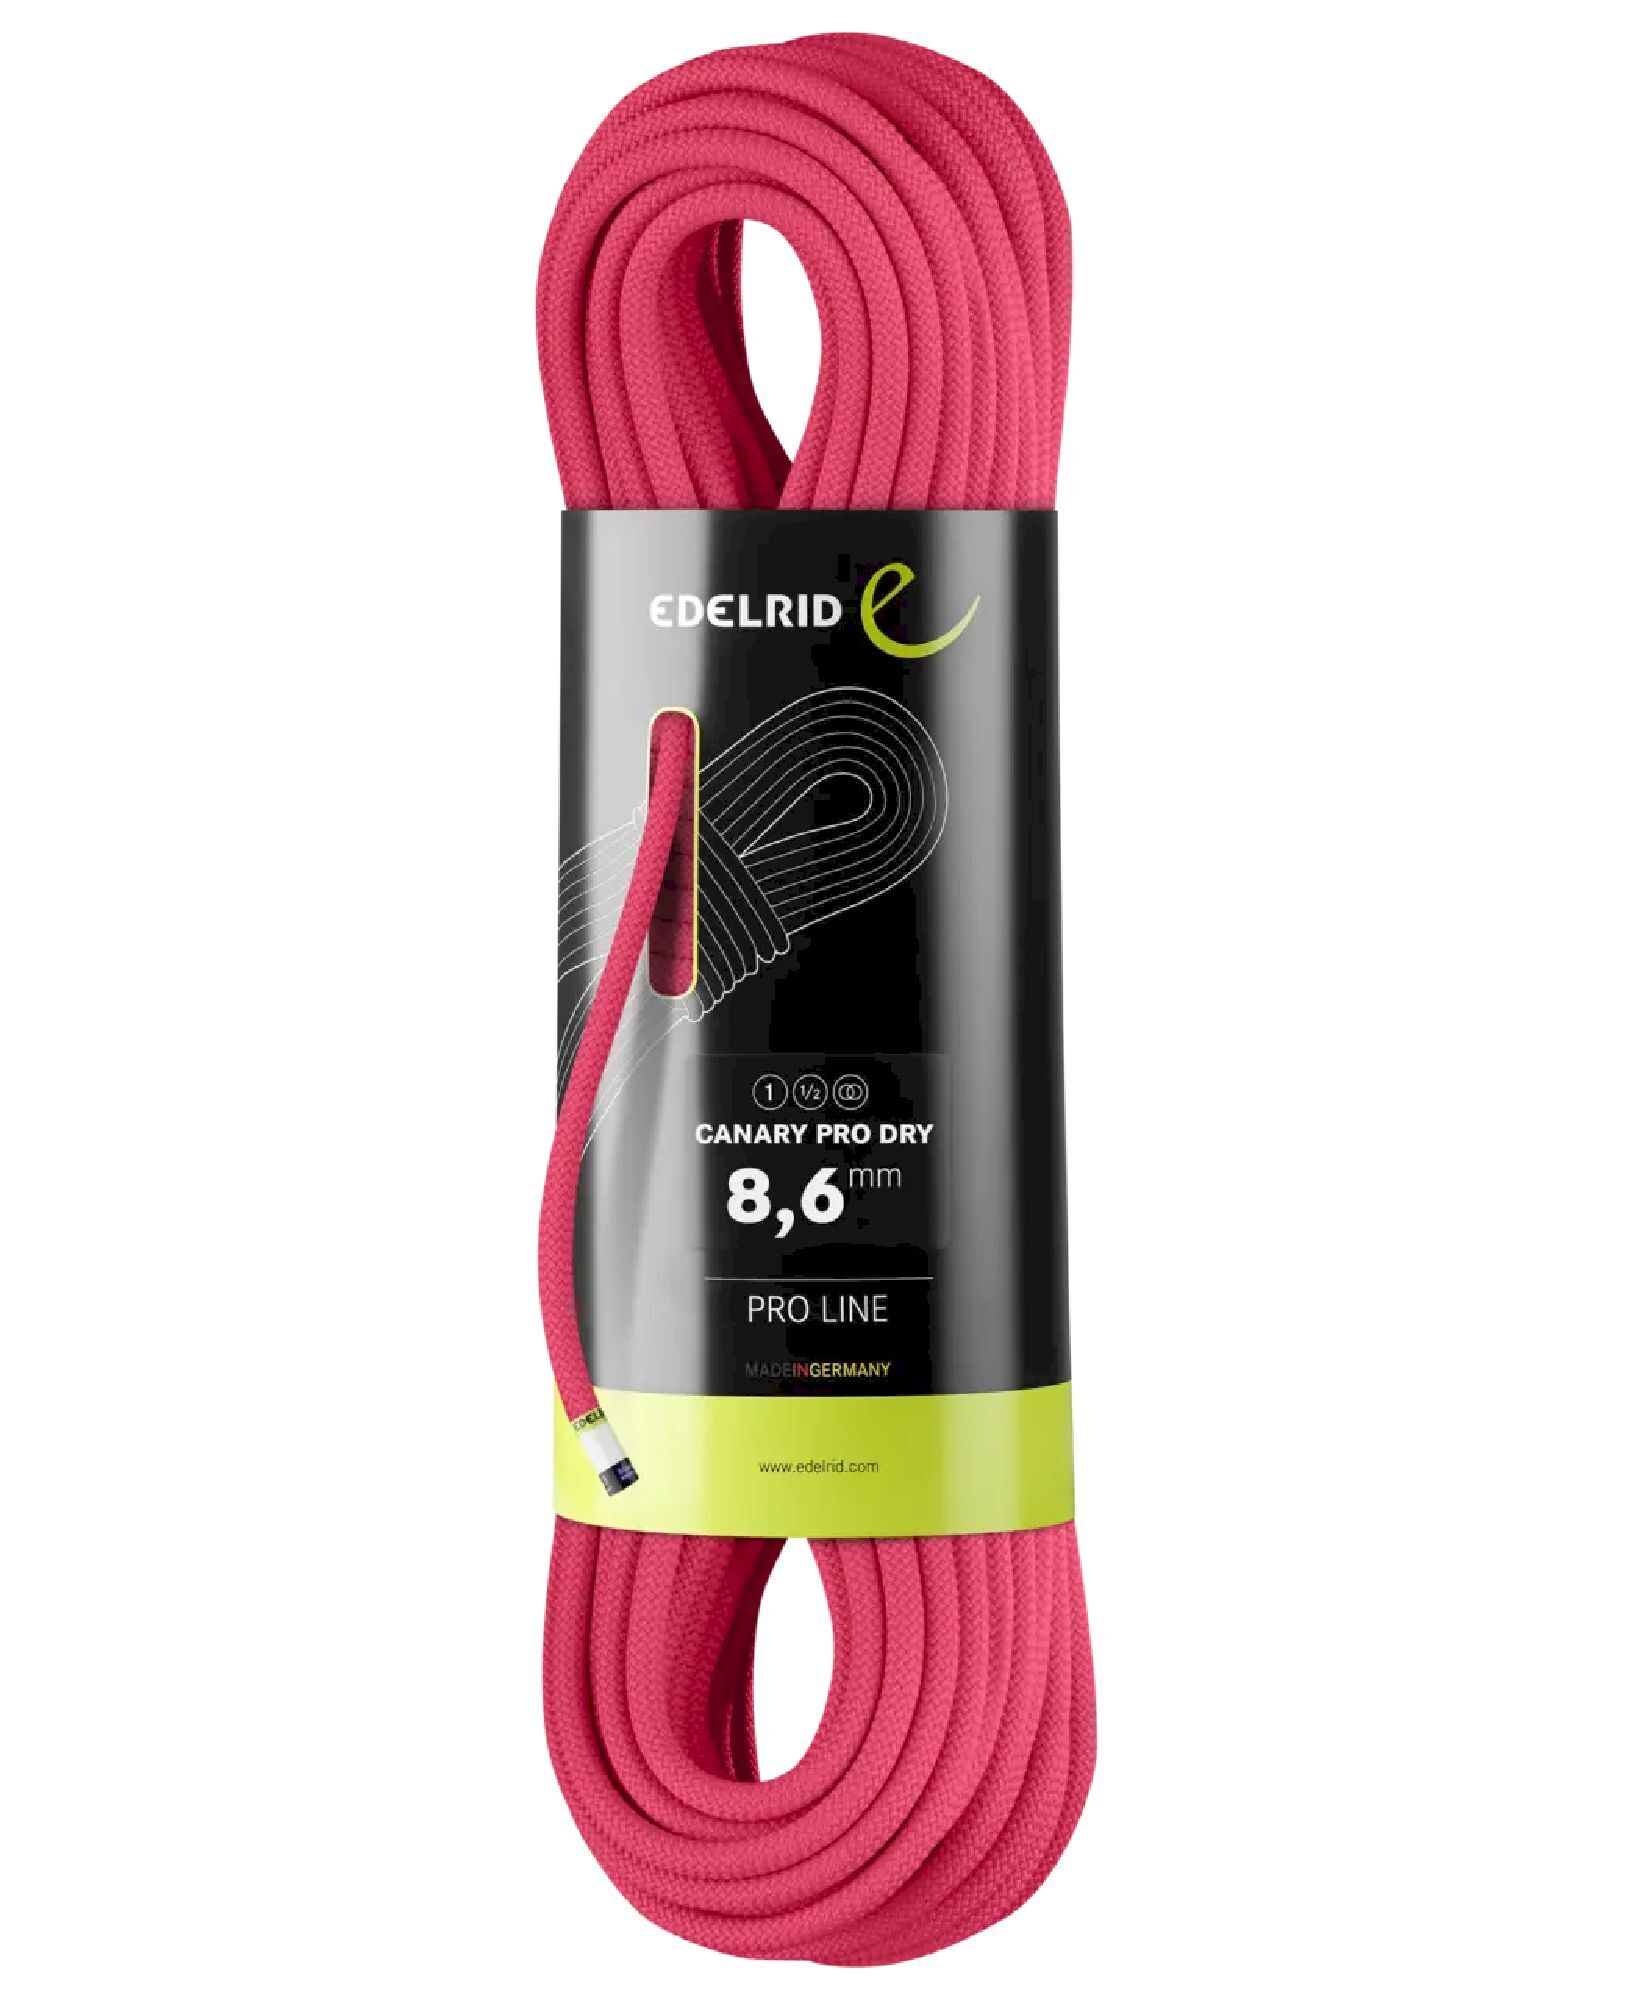 Edelrid Canary Pro Dry 8,6mm - Poloviční lano | Hardloop